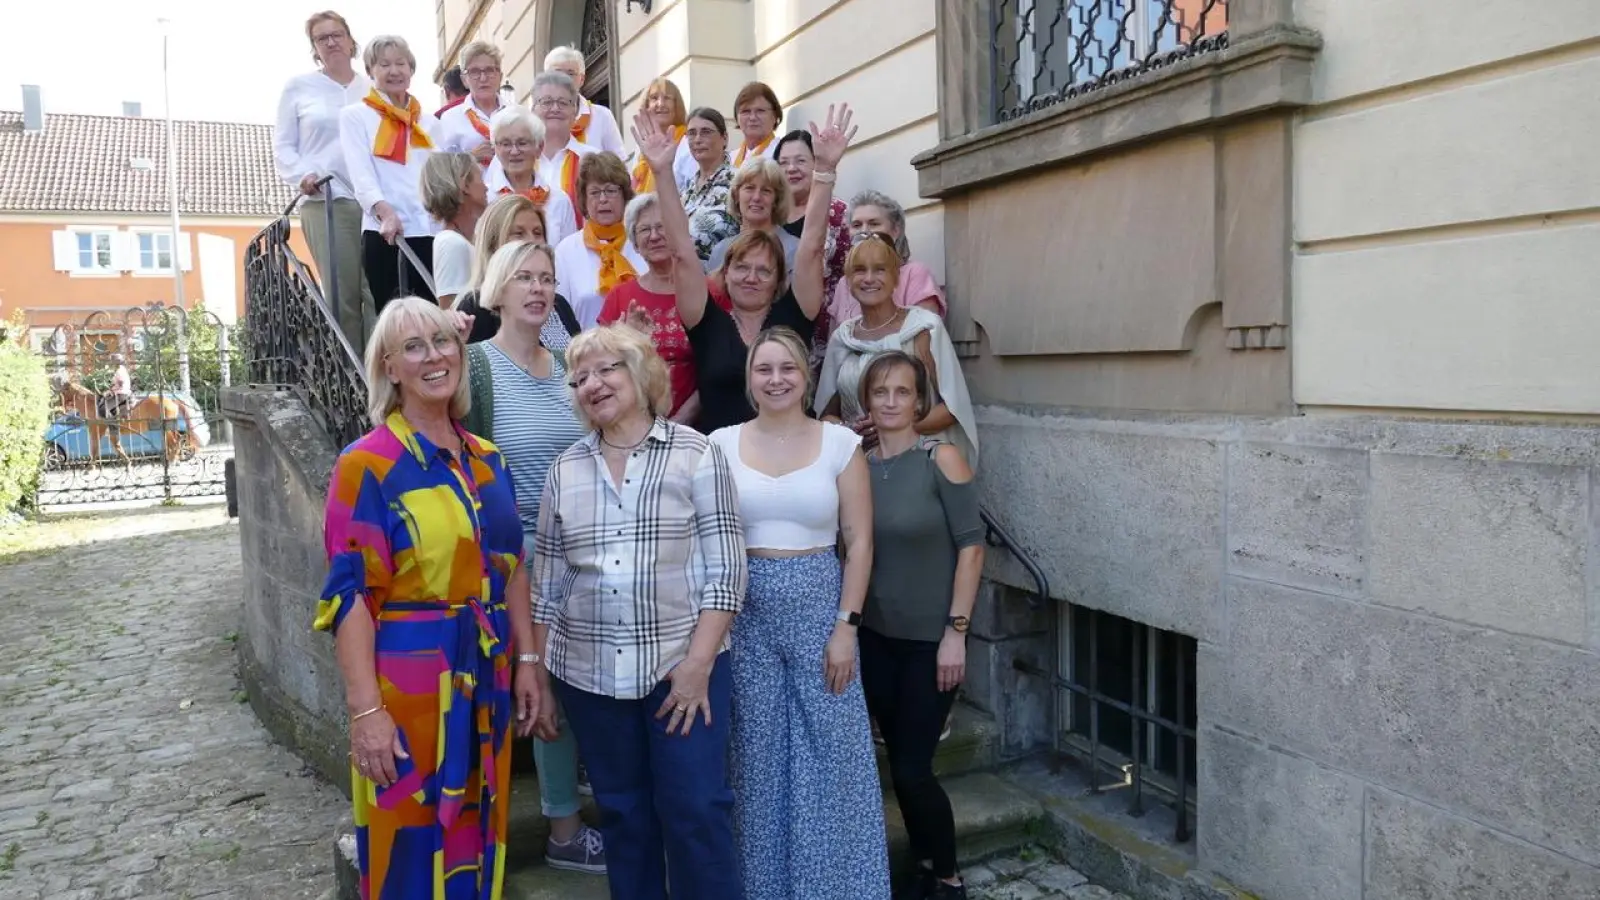 Die künftigen Hospizbegleiterinnen freuten sich über ihr Zusammensein beim Fortbildungskurs, den der Hospizverein Uffenheim unter der Leitung von Petra Tatsch (erste Reihe links) organisiert hat. (Foto: Sylvia Fehlinger)